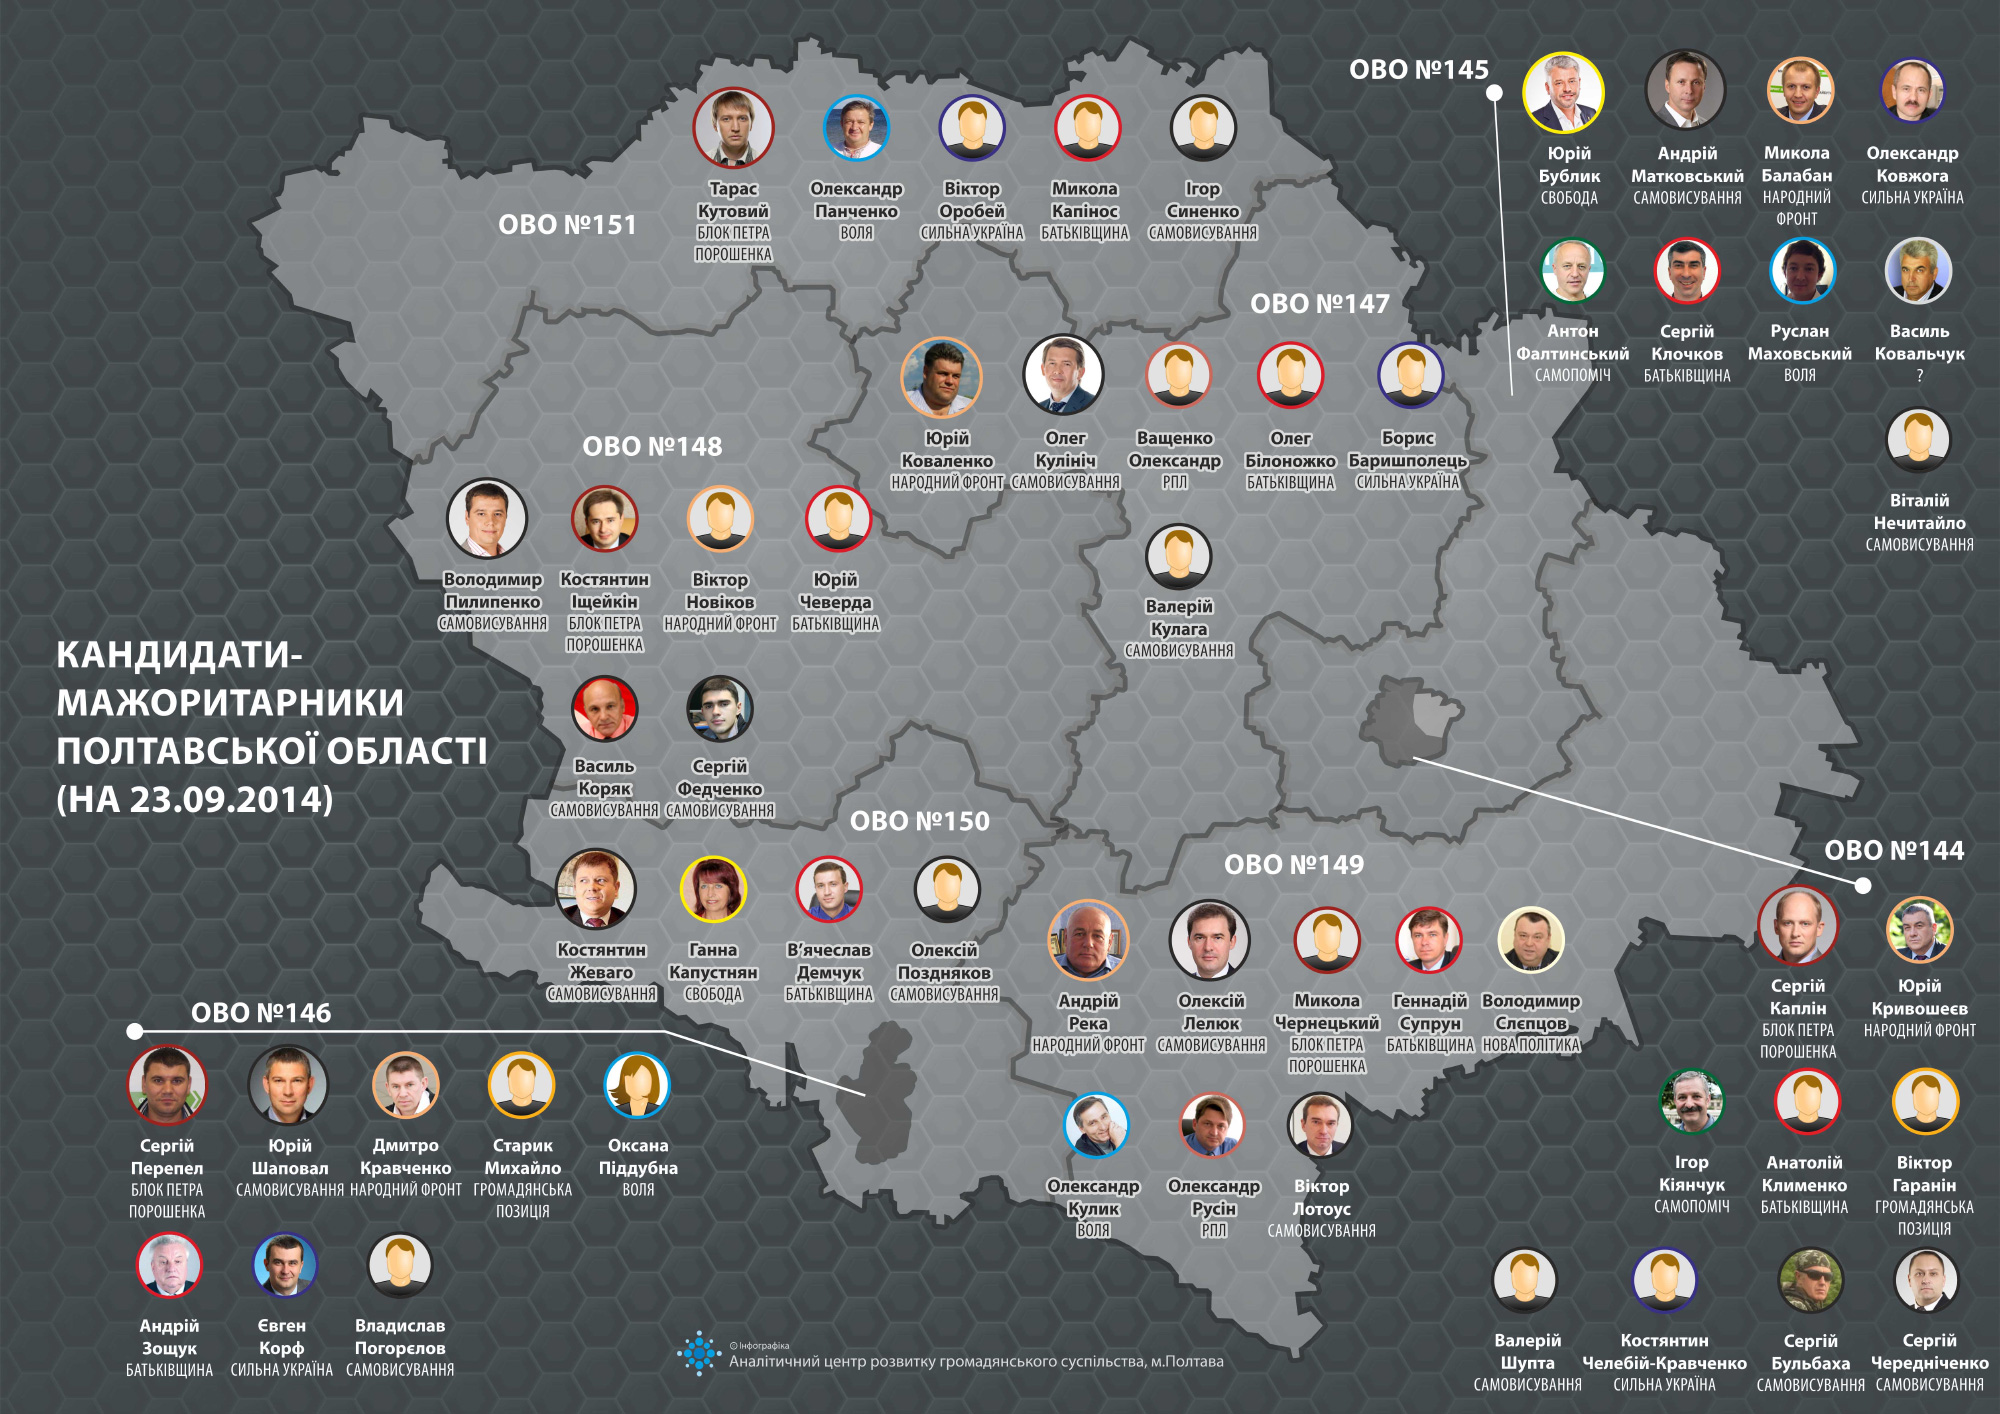 Карта кандидатов-мажоритарщиков Полтавской области (на 23.09.2014)